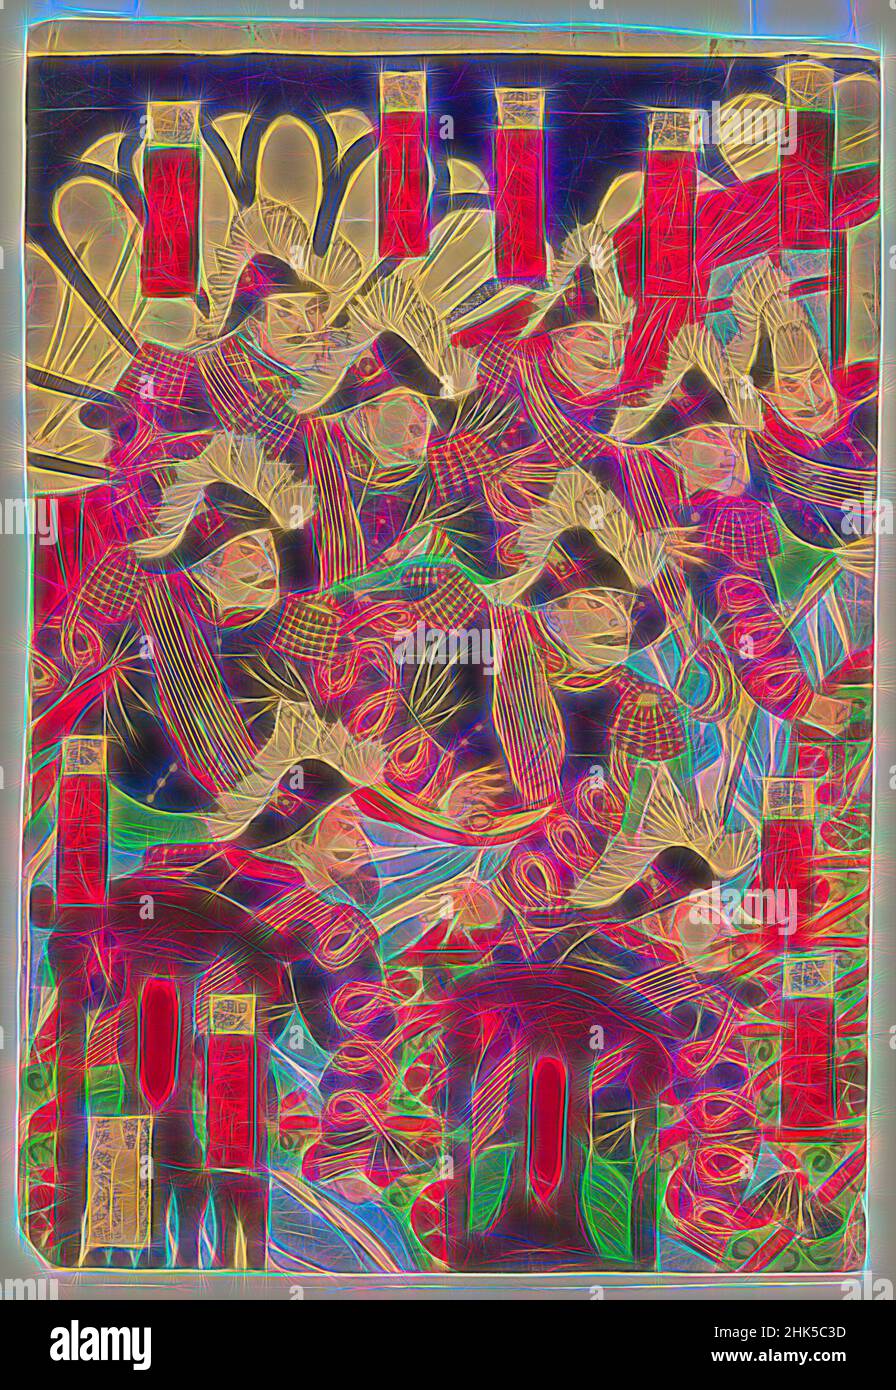 Inspiré par l'illustration de la délibération à Invade Corée, impression de blocs de bois de couleur sur papier, Japon, 1868-1912, période Meiji, 14 3/8 x 9 5/8 po., 36,5 x 24,4 cm, réimaginé par Artotop. L'art classique réinventé avec une touche moderne. Conception de lumière chaleureuse et gaie, de luminosité et de rayonnement de lumière. La photographie s'inspire du surréalisme et du futurisme, embrassant l'énergie dynamique de la technologie moderne, du mouvement, de la vitesse et révolutionne la culture Banque D'Images